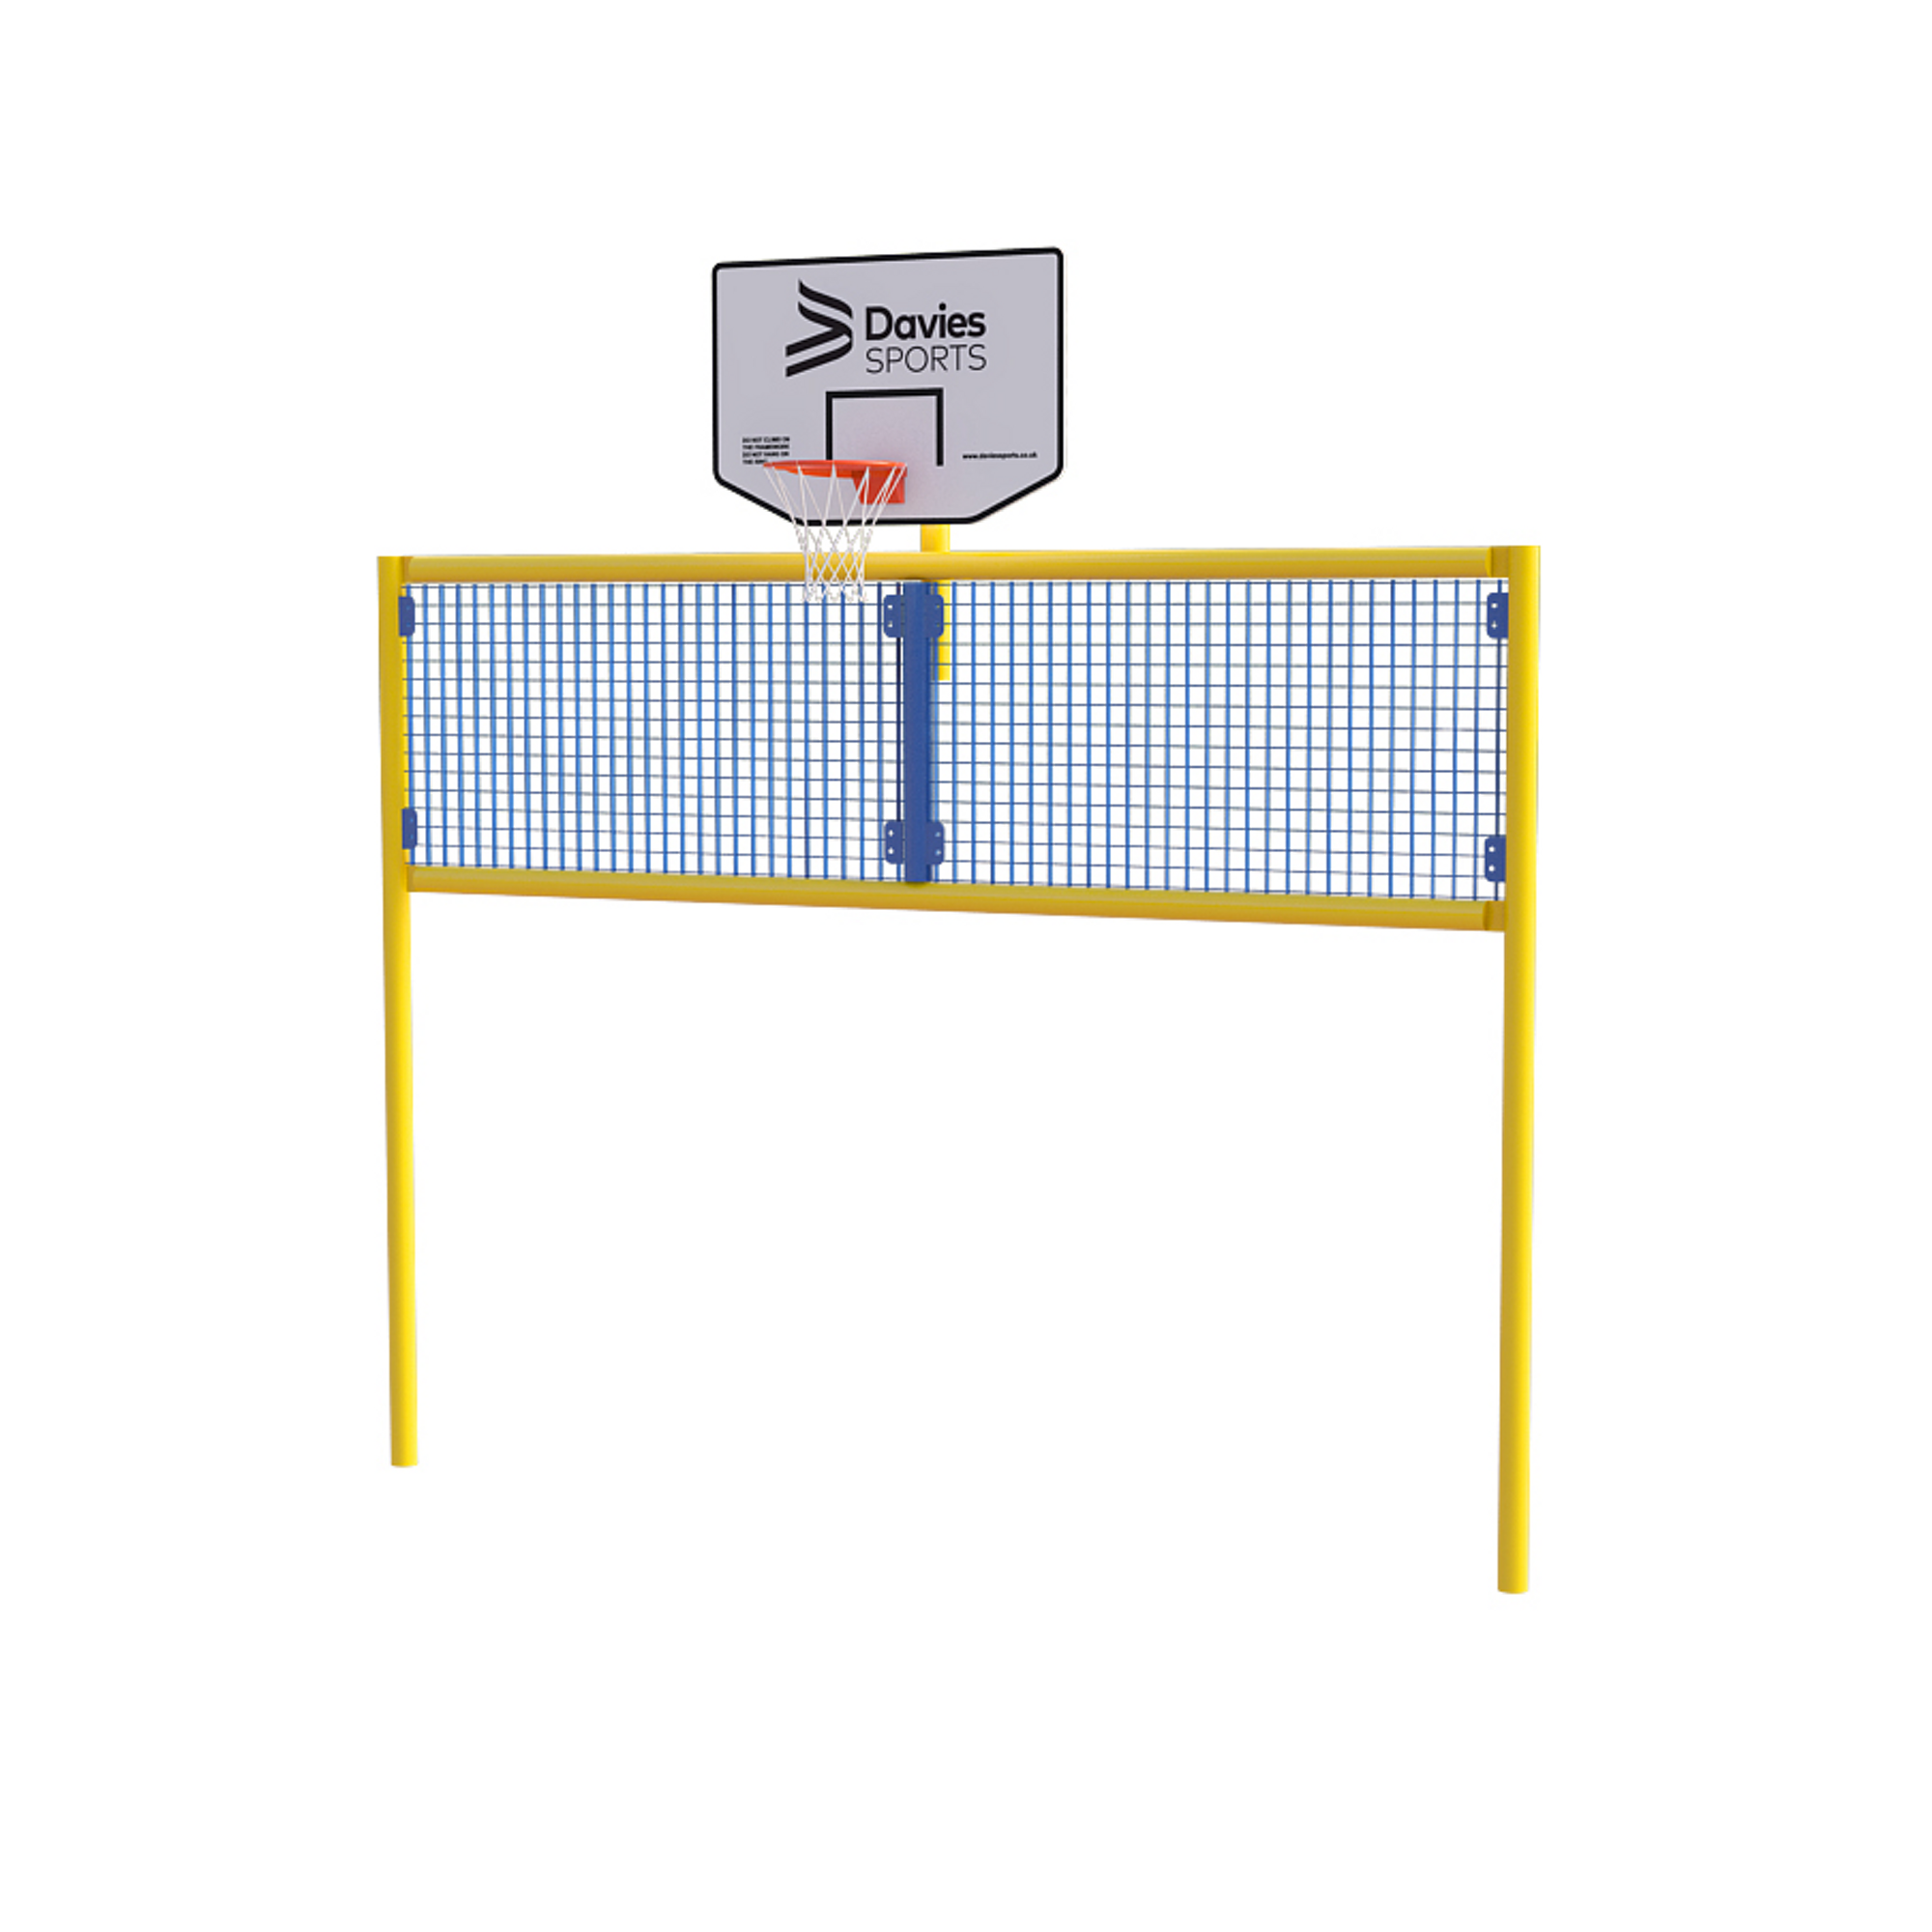 Full Open Goal Basketball Yel Frame Blue